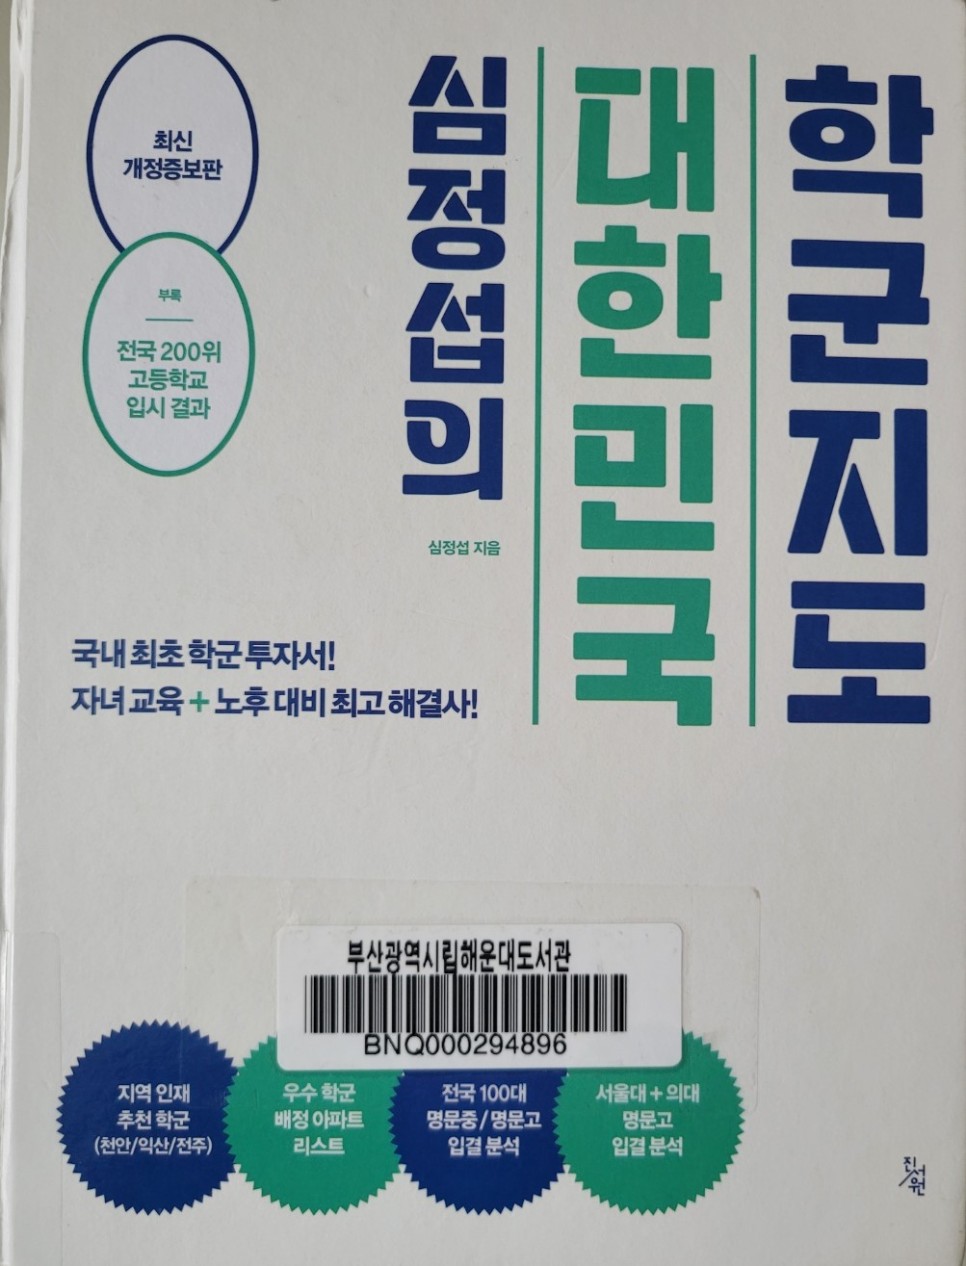 심정섭의 대한민국 학군지도 - 부동산 공부 책 리뷰